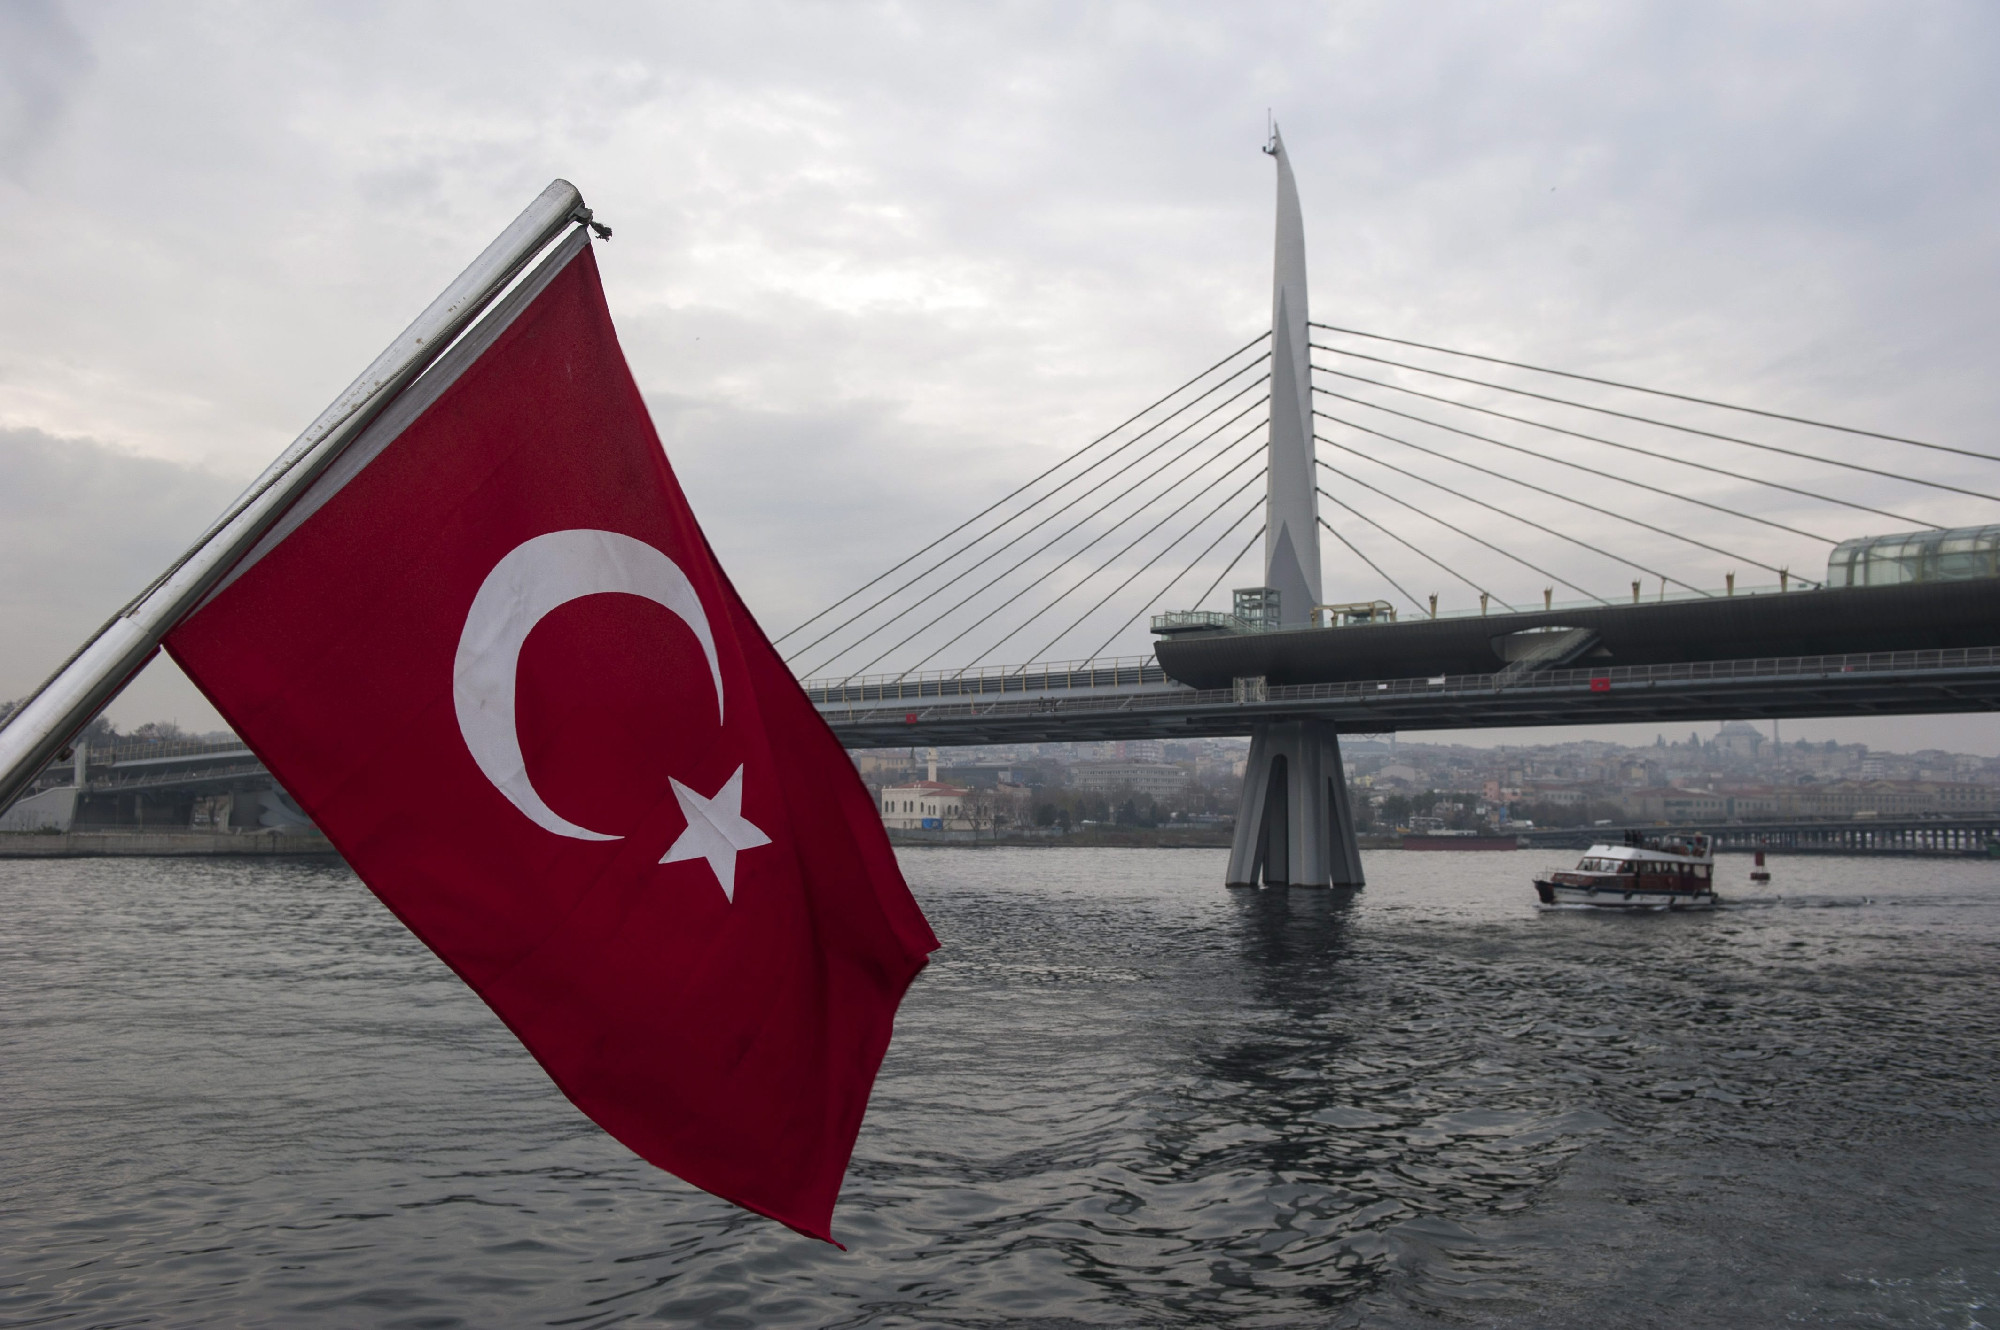 Izrael szigorúan óva int a törökországi utazásoktól